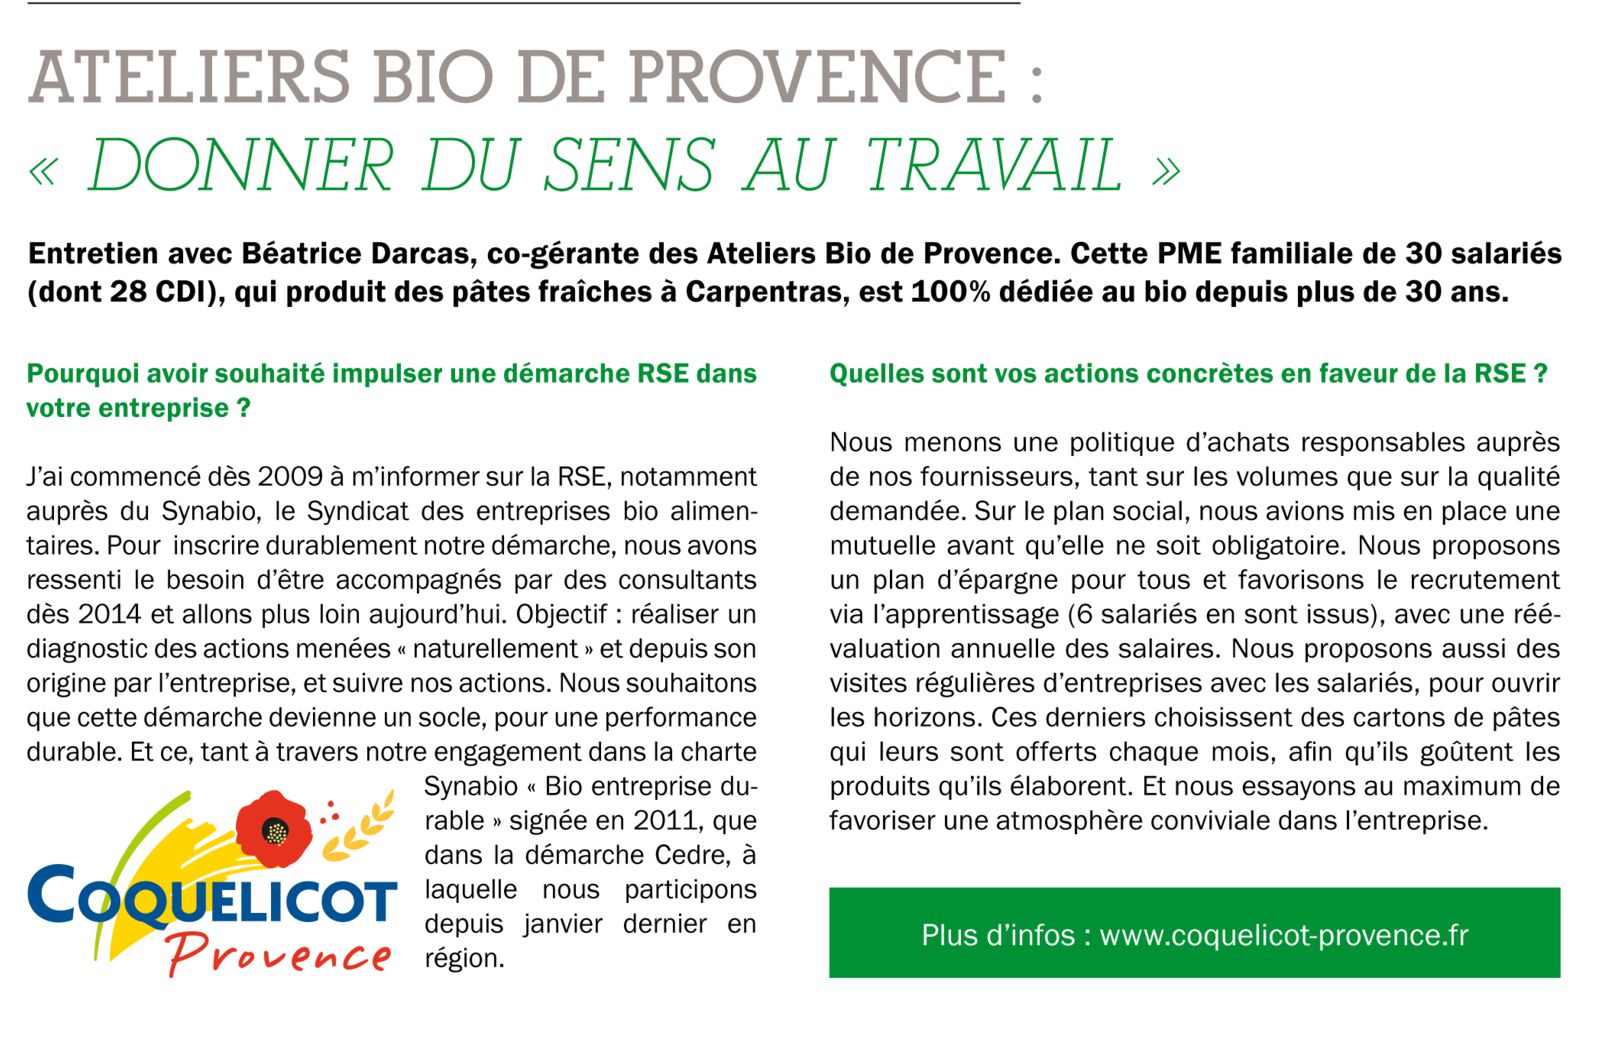 La démarche RSE d'Ateliers Bio de Provence